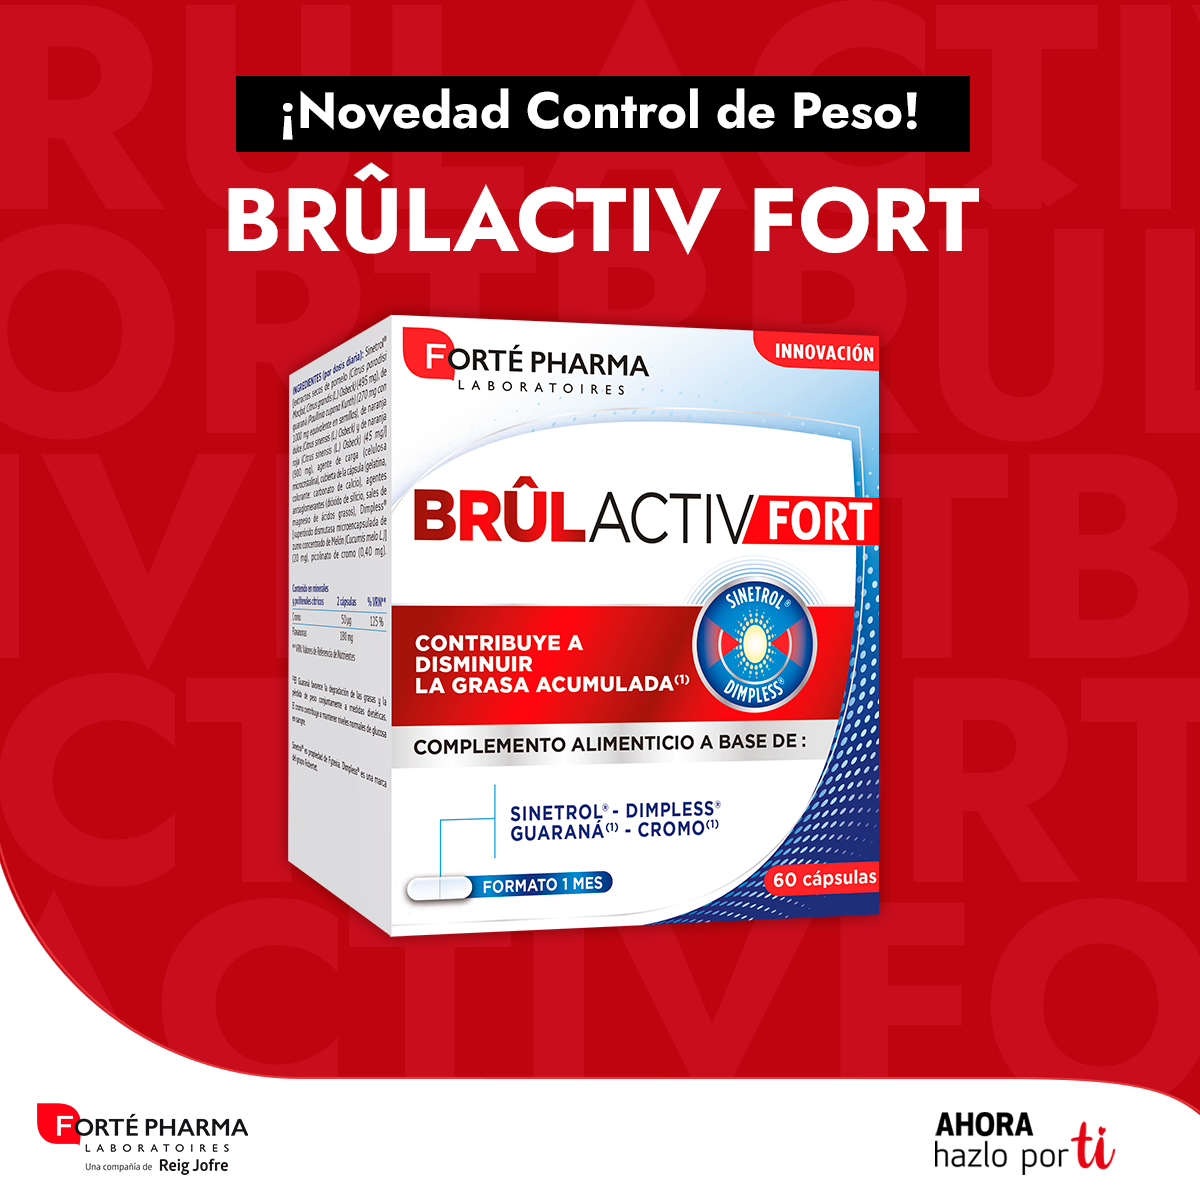 brulactiv fort-Control de peso y eliminación de líquidos-Calidad-Forté Pharma